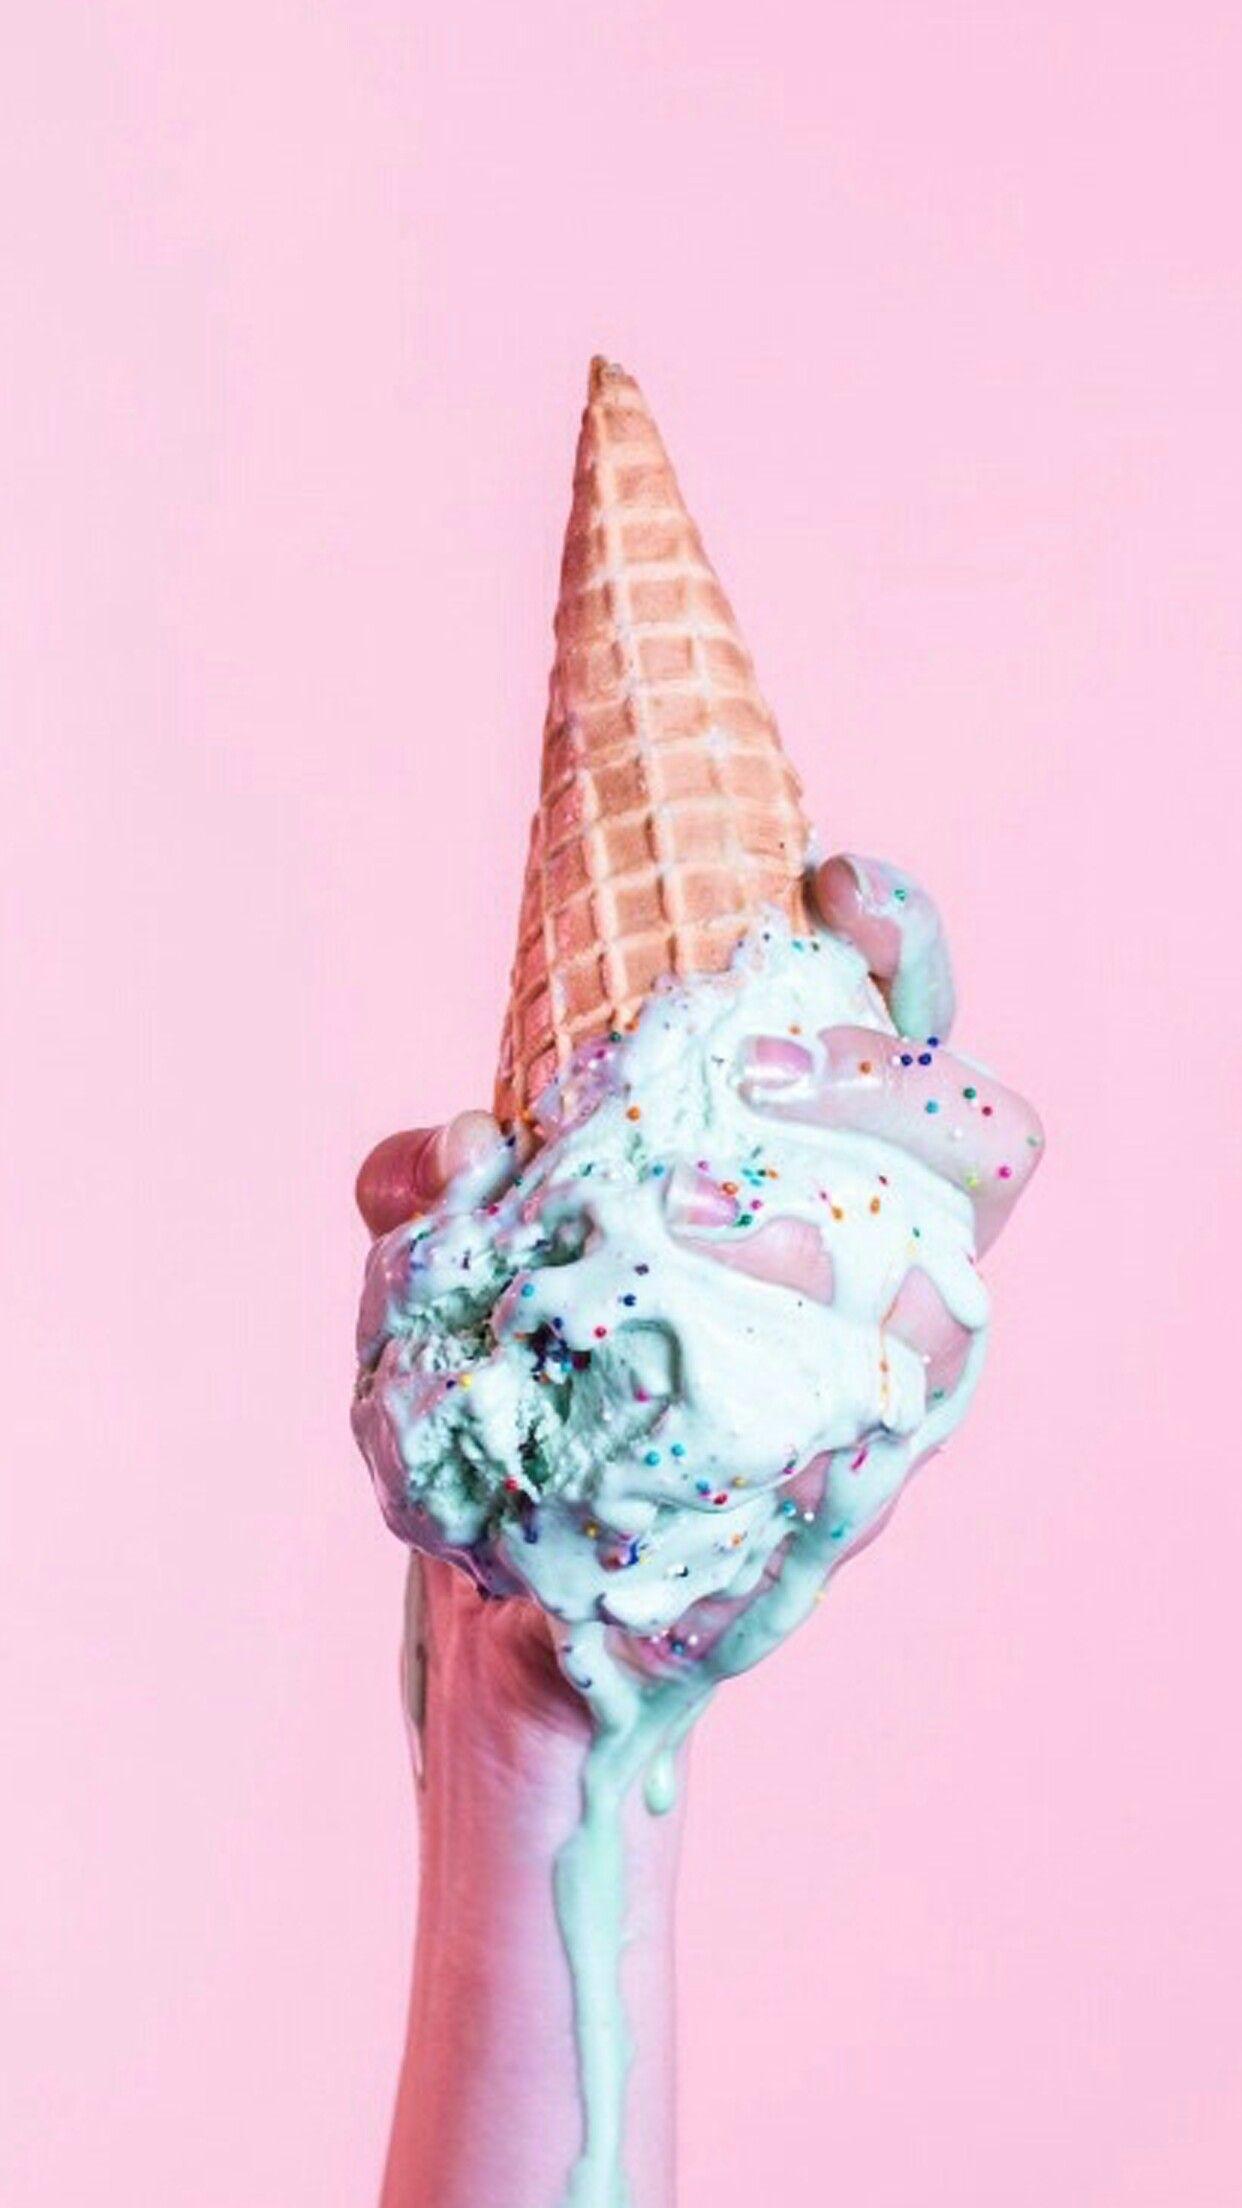 Không có gì tuyệt vời hơn khi thưởng thức ly kem mát ngon trong nắng hè nóng bức. Hãy xem hình ảnh này để bạn tìm cảm hứng và vị ngọt tuyệt vời của kem sẽ làm bạn ấn tượng đến mức nào.